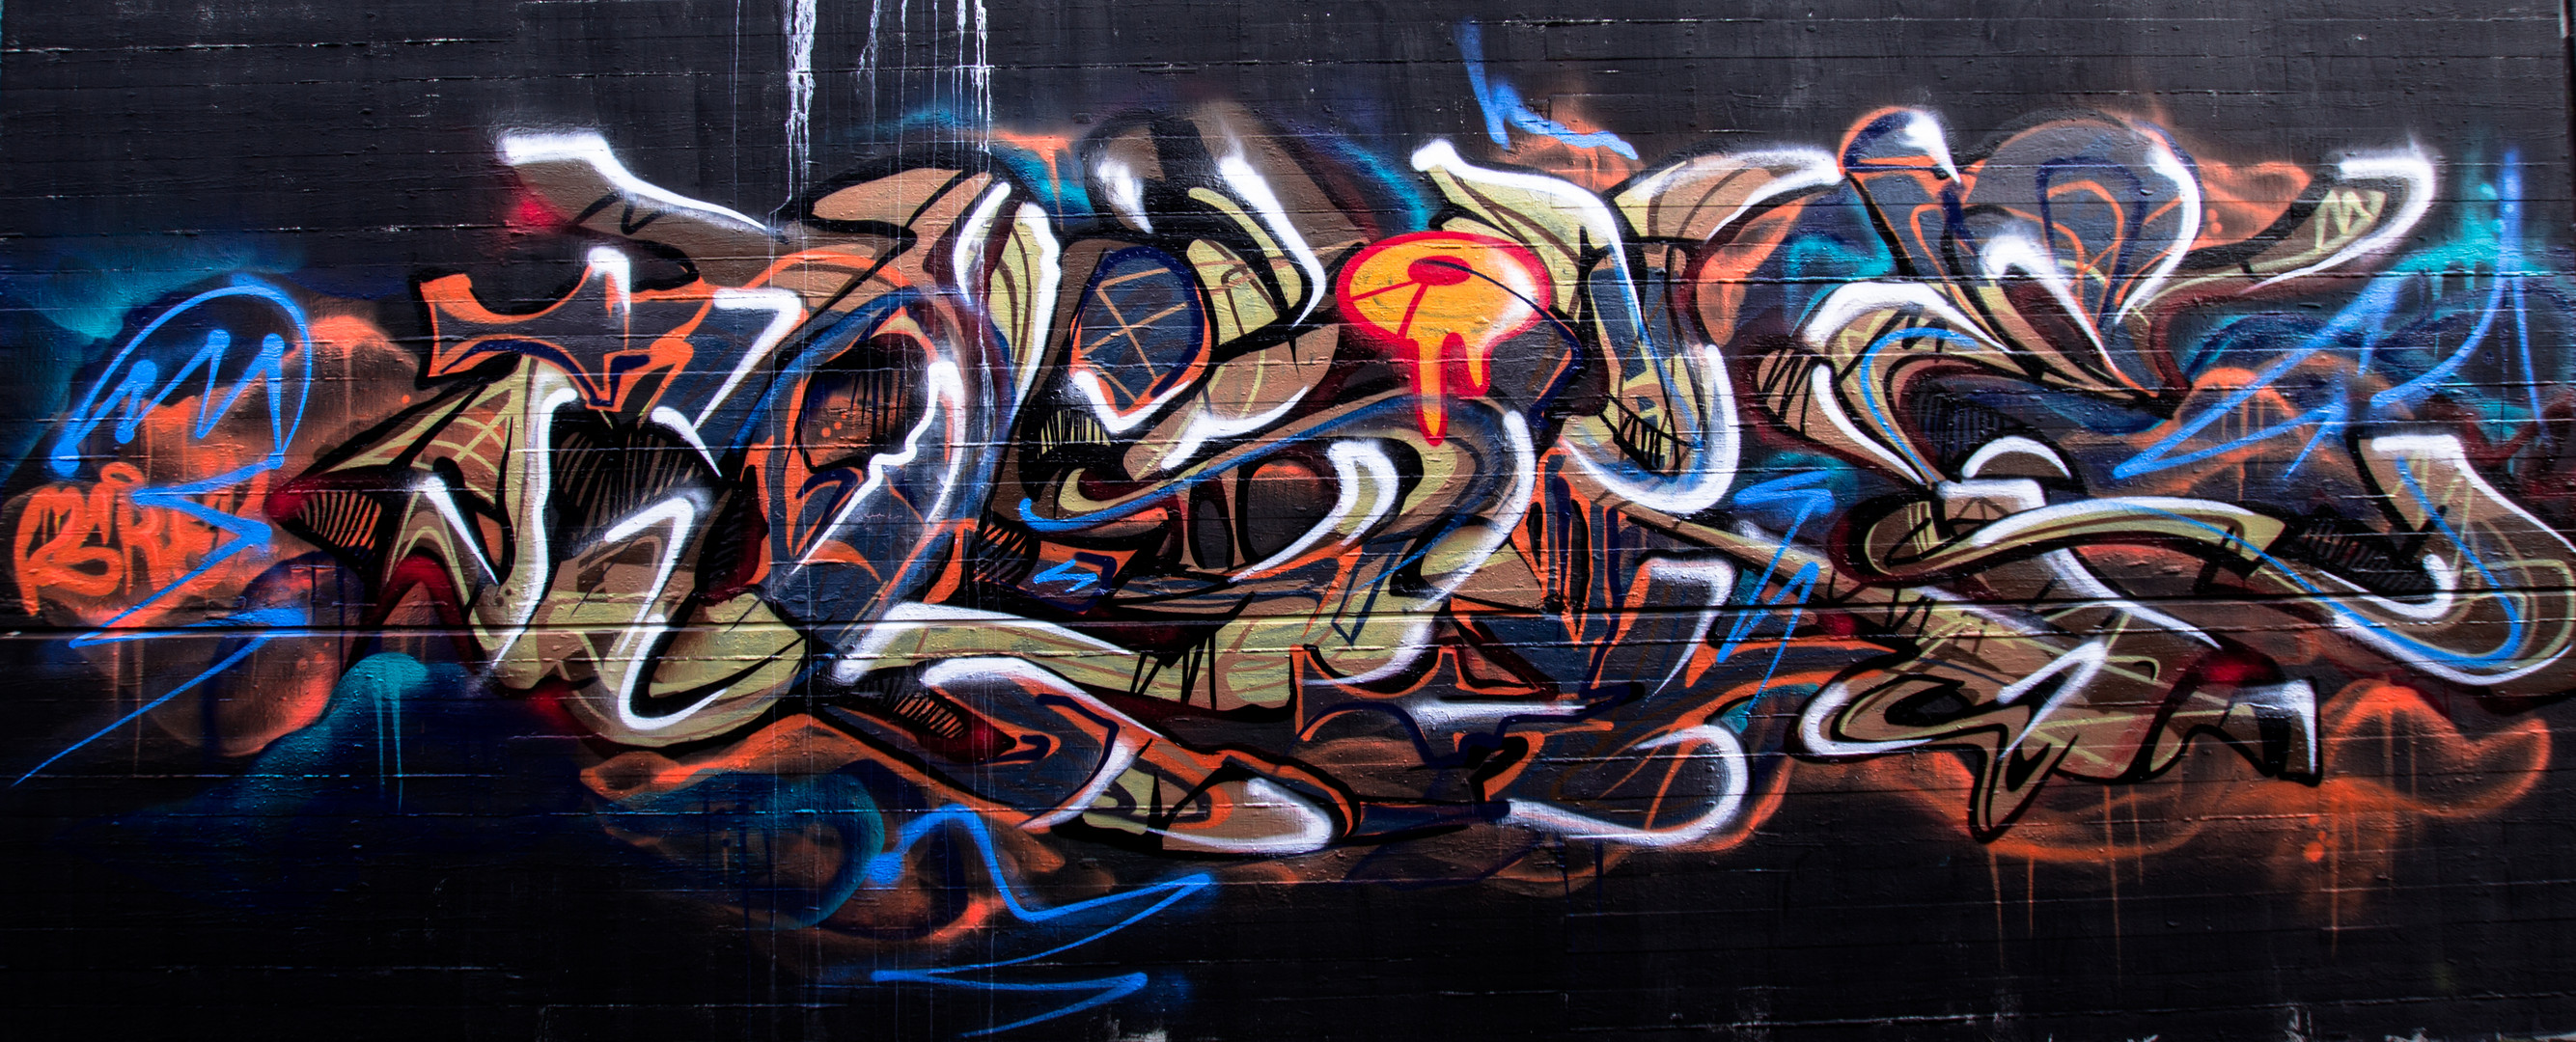 "" Graffiti 01 ""